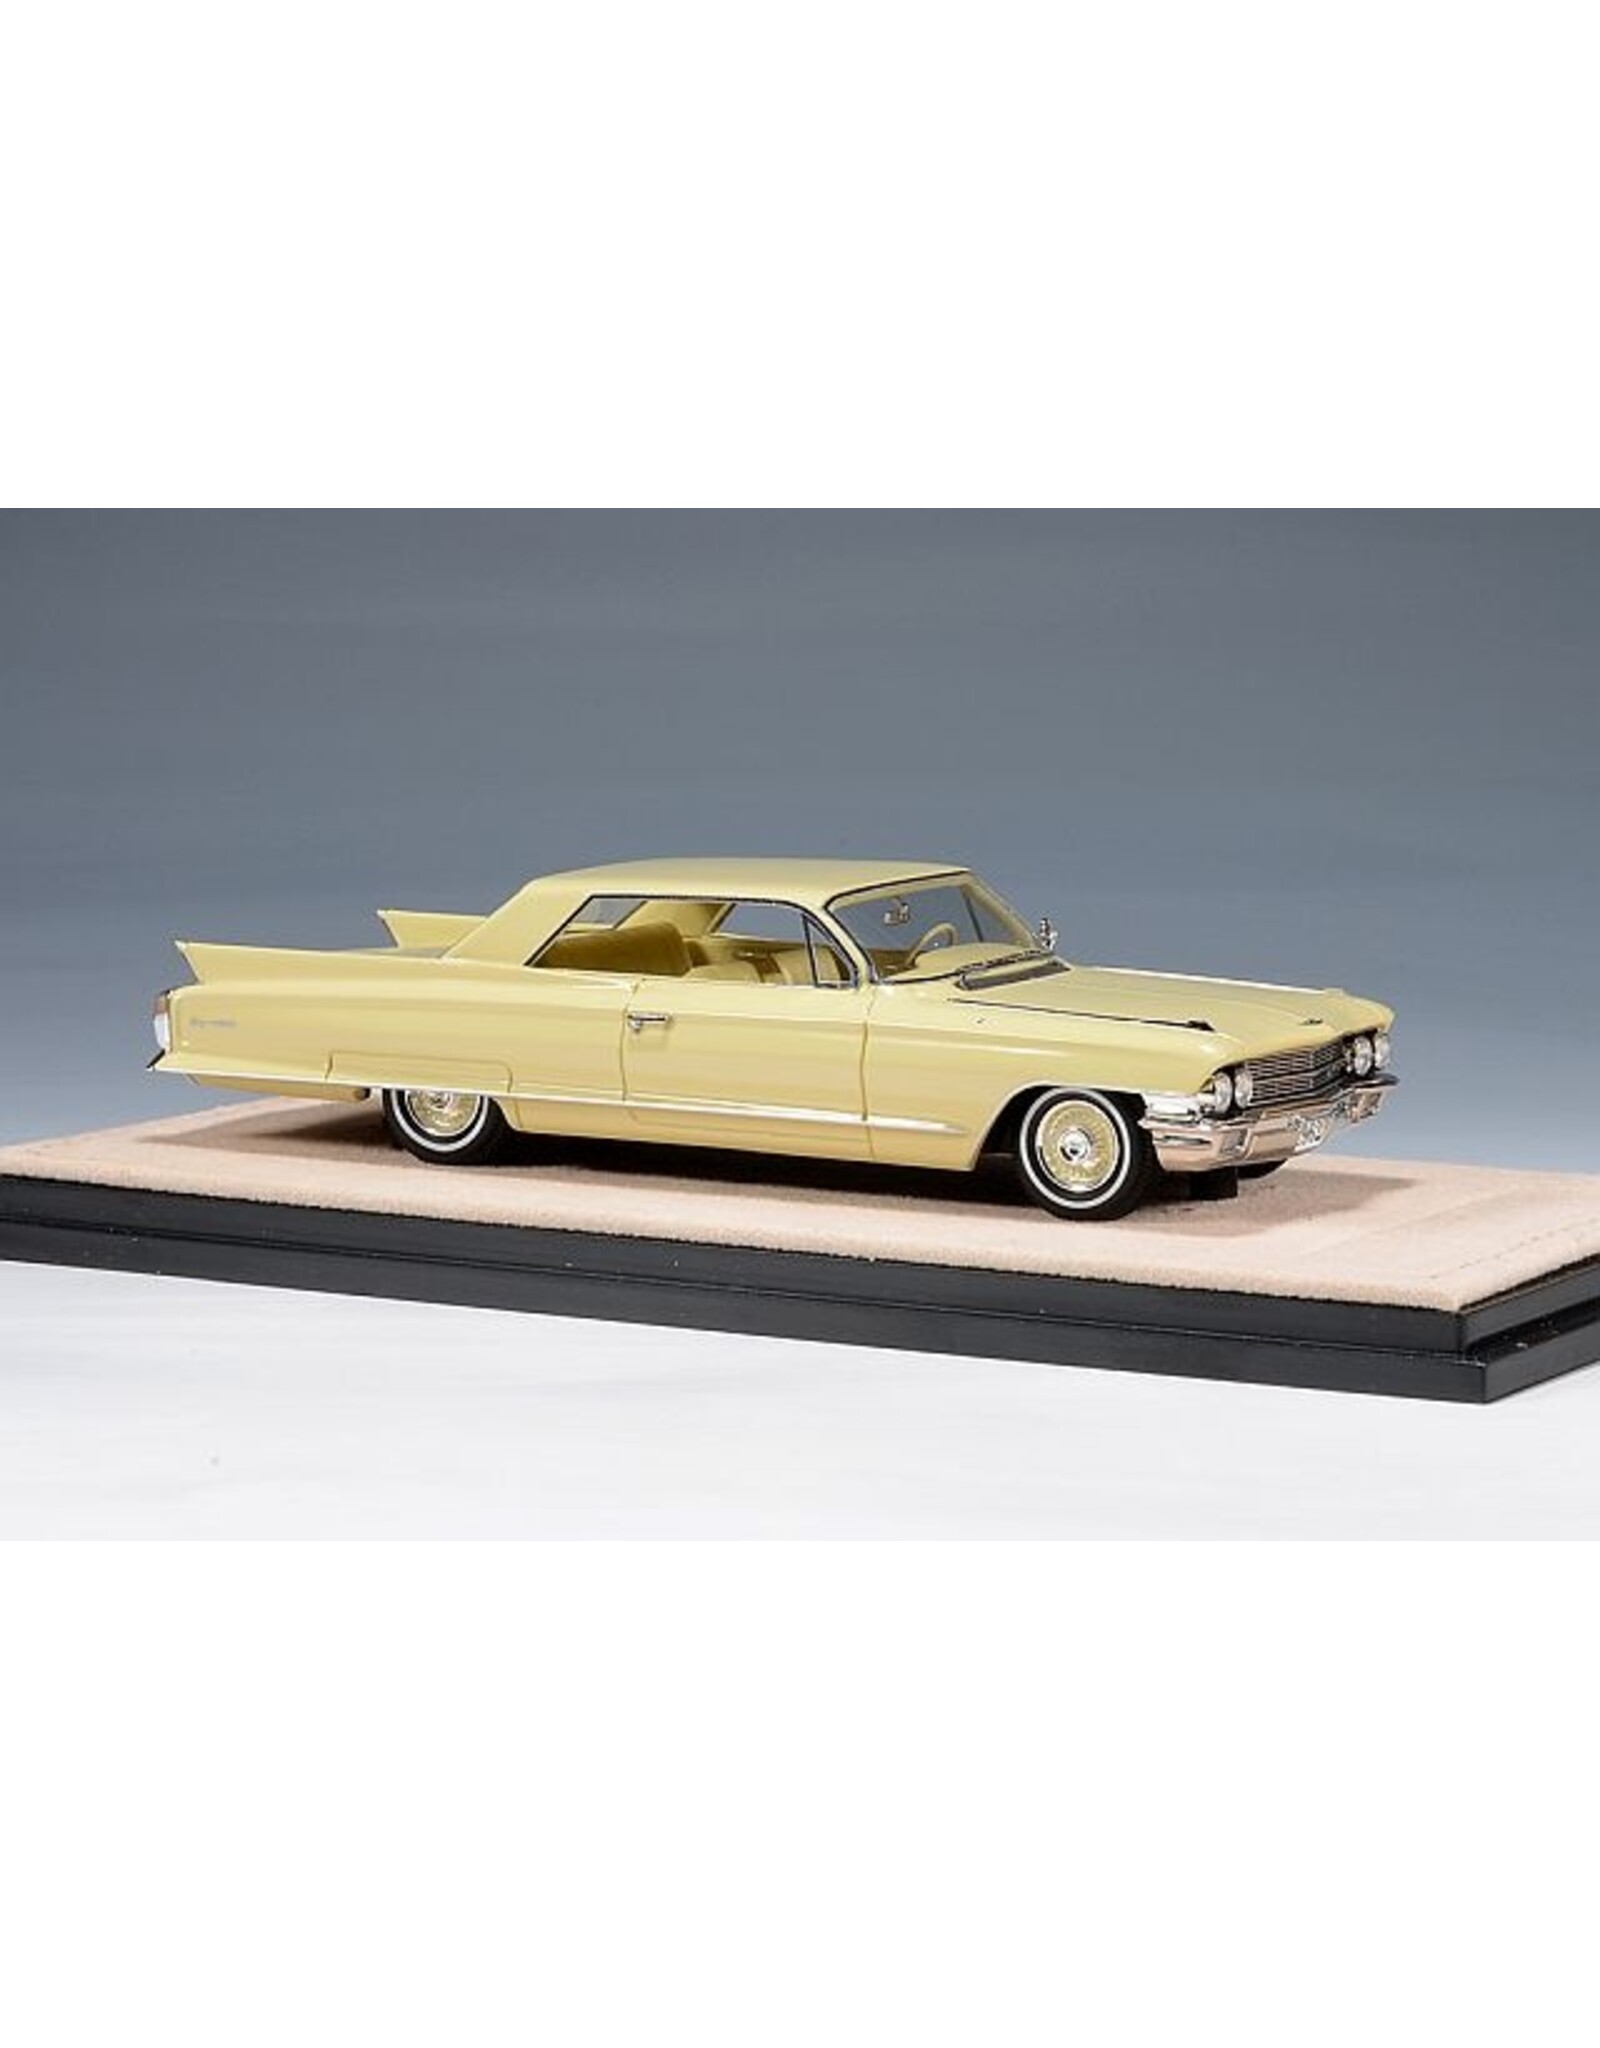 Cadillac(General Motors) Cadillac Coupe de Ville(1962)Maize